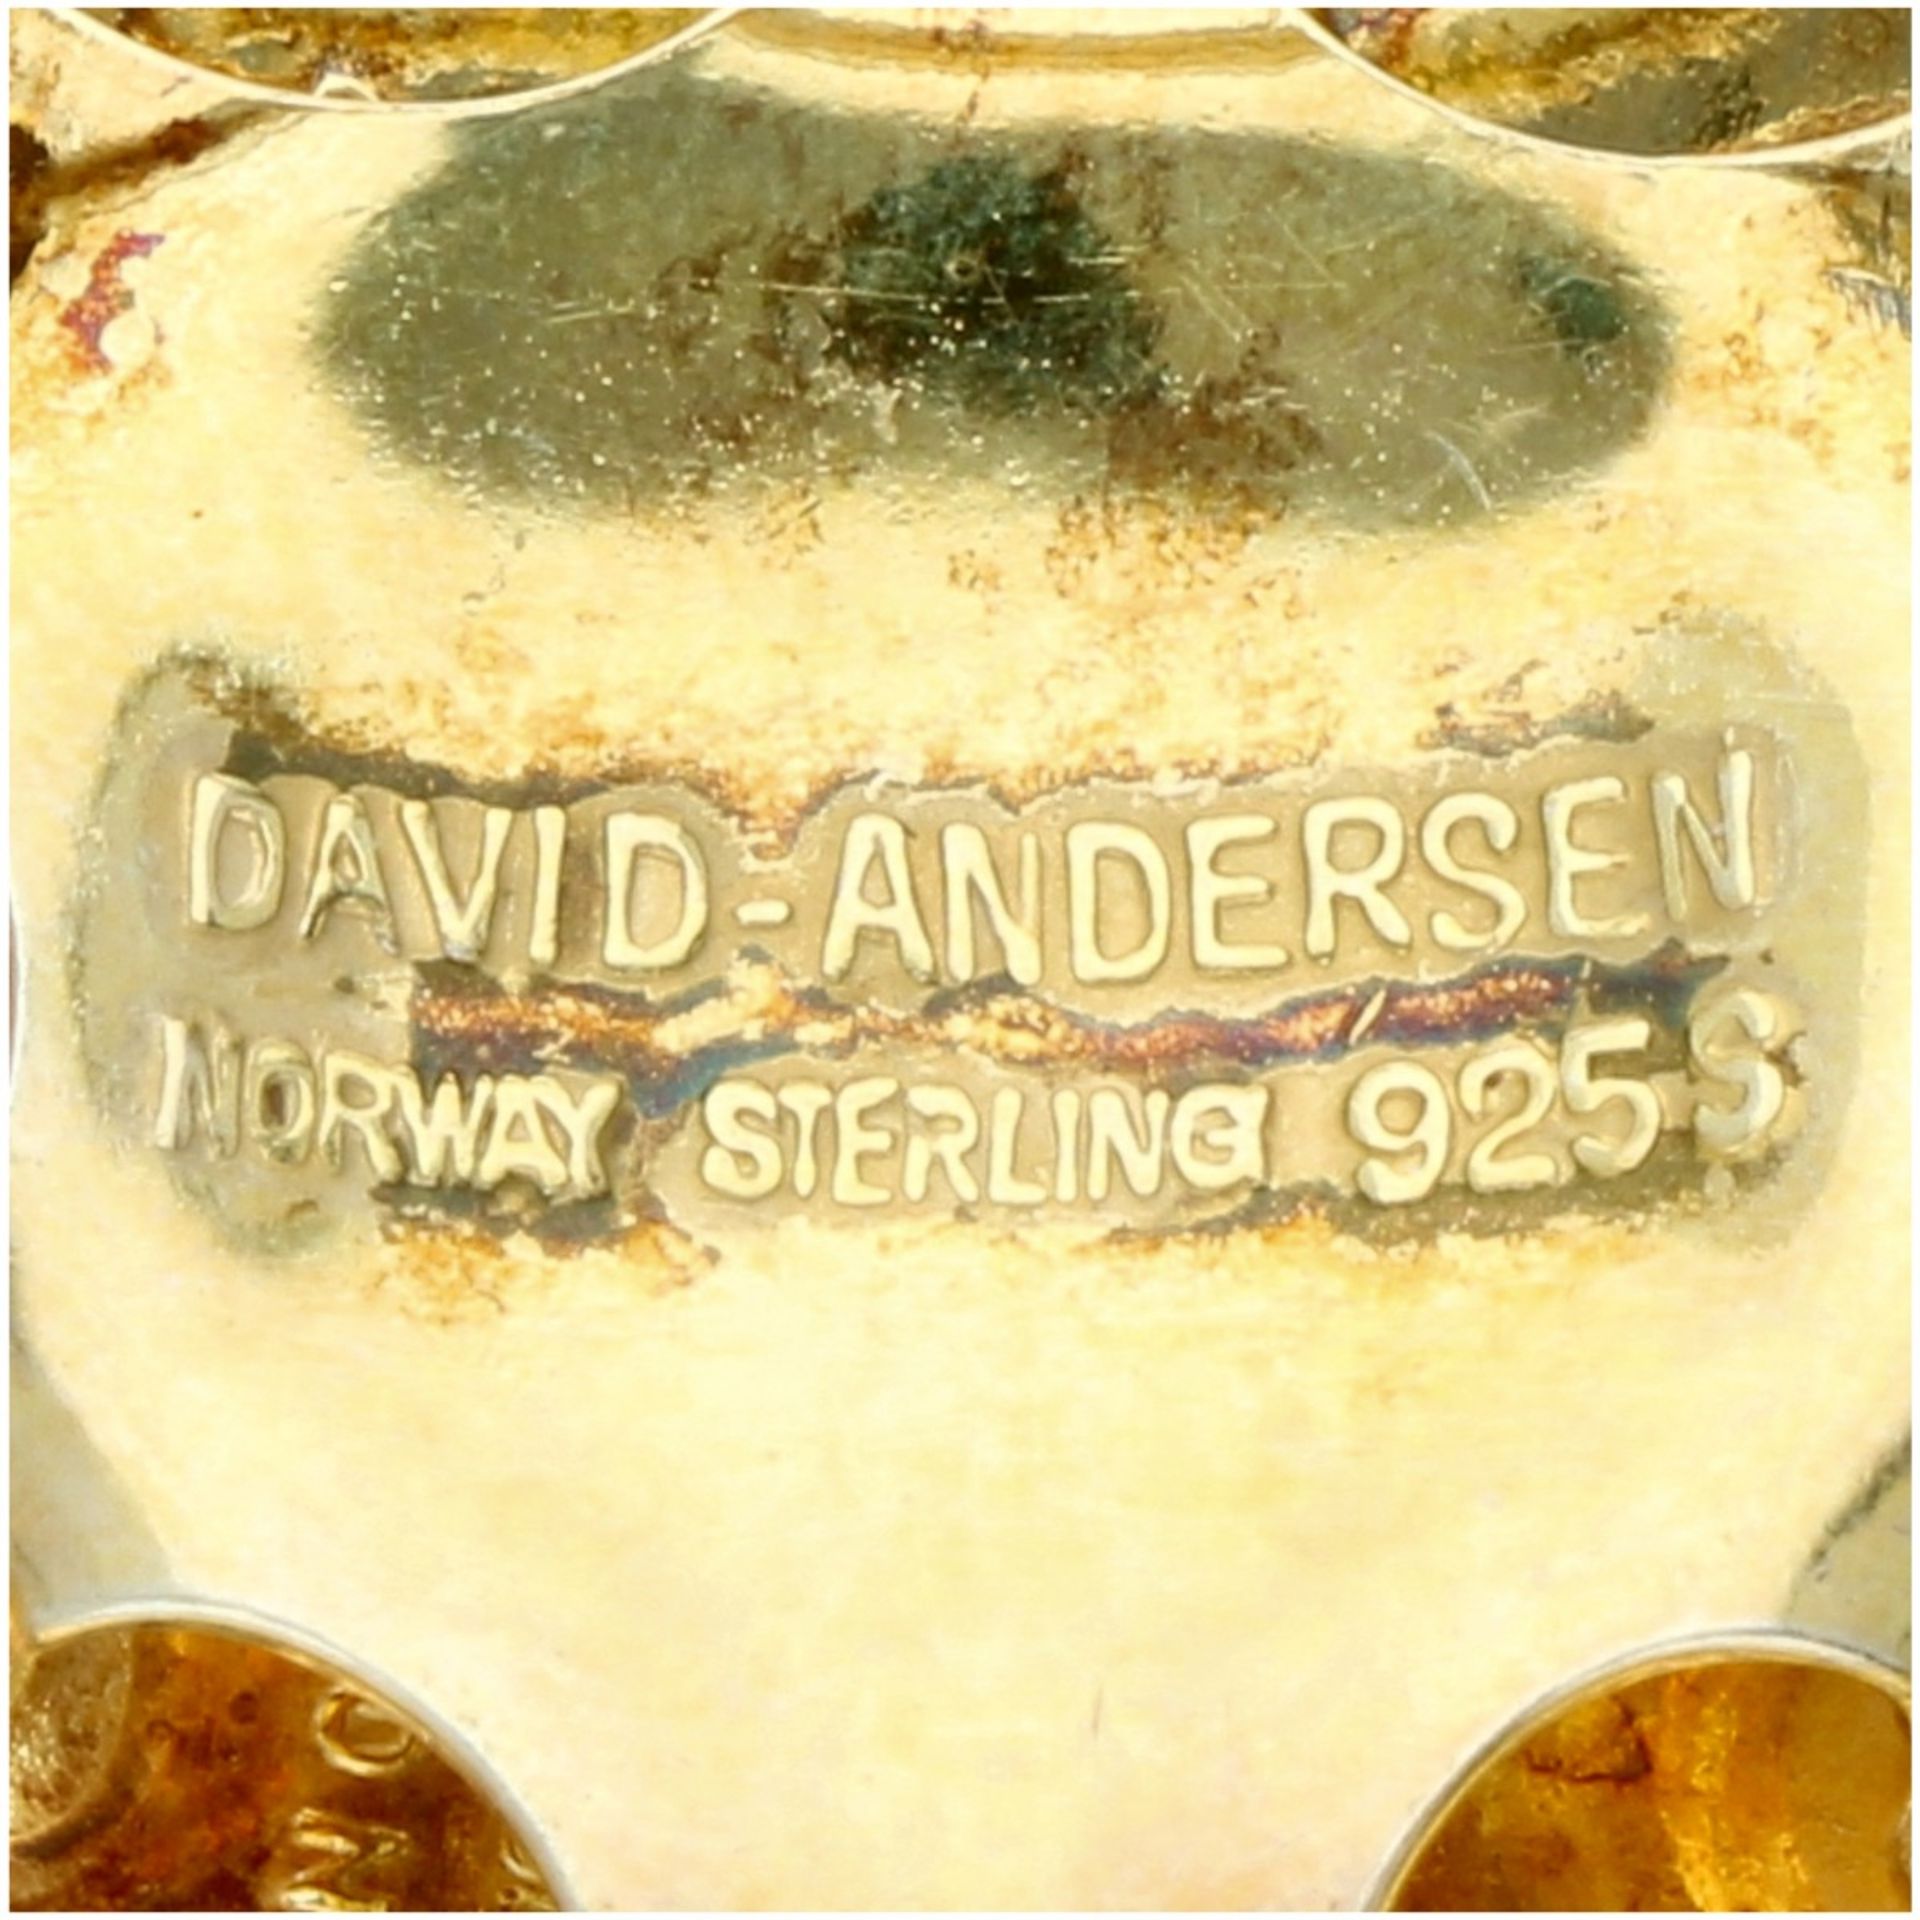 Verguld zilveren David-Andersen bloemvormige broche, met emaille - 925/1000. - Image 3 of 3